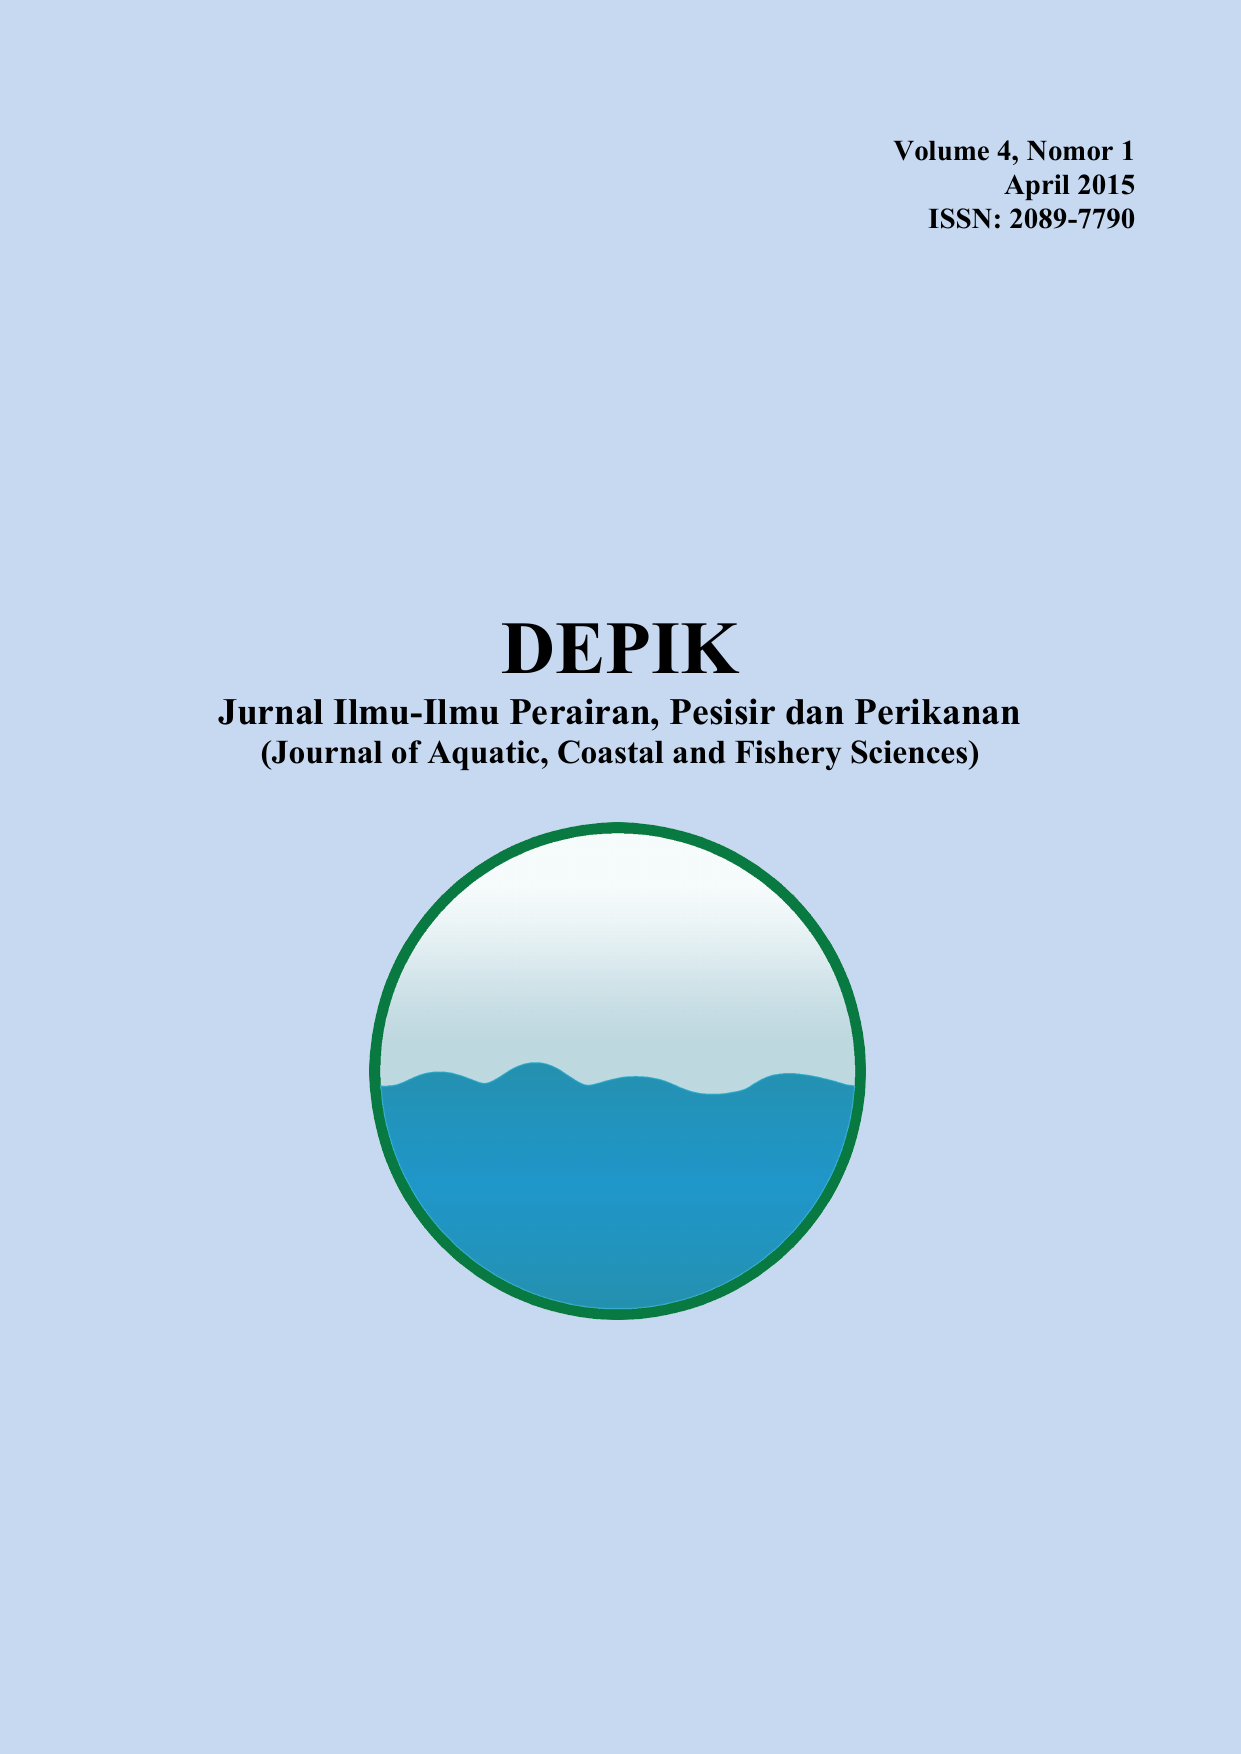 Volume 4 Nomor 1 April 2015 ISSN 2089 7790 DEPIK Jurnal Ilmu Ilmu Perairan Pesisir dan Perikanan Journal of Aquatic Coastal and Fishery Sciences DEPIK